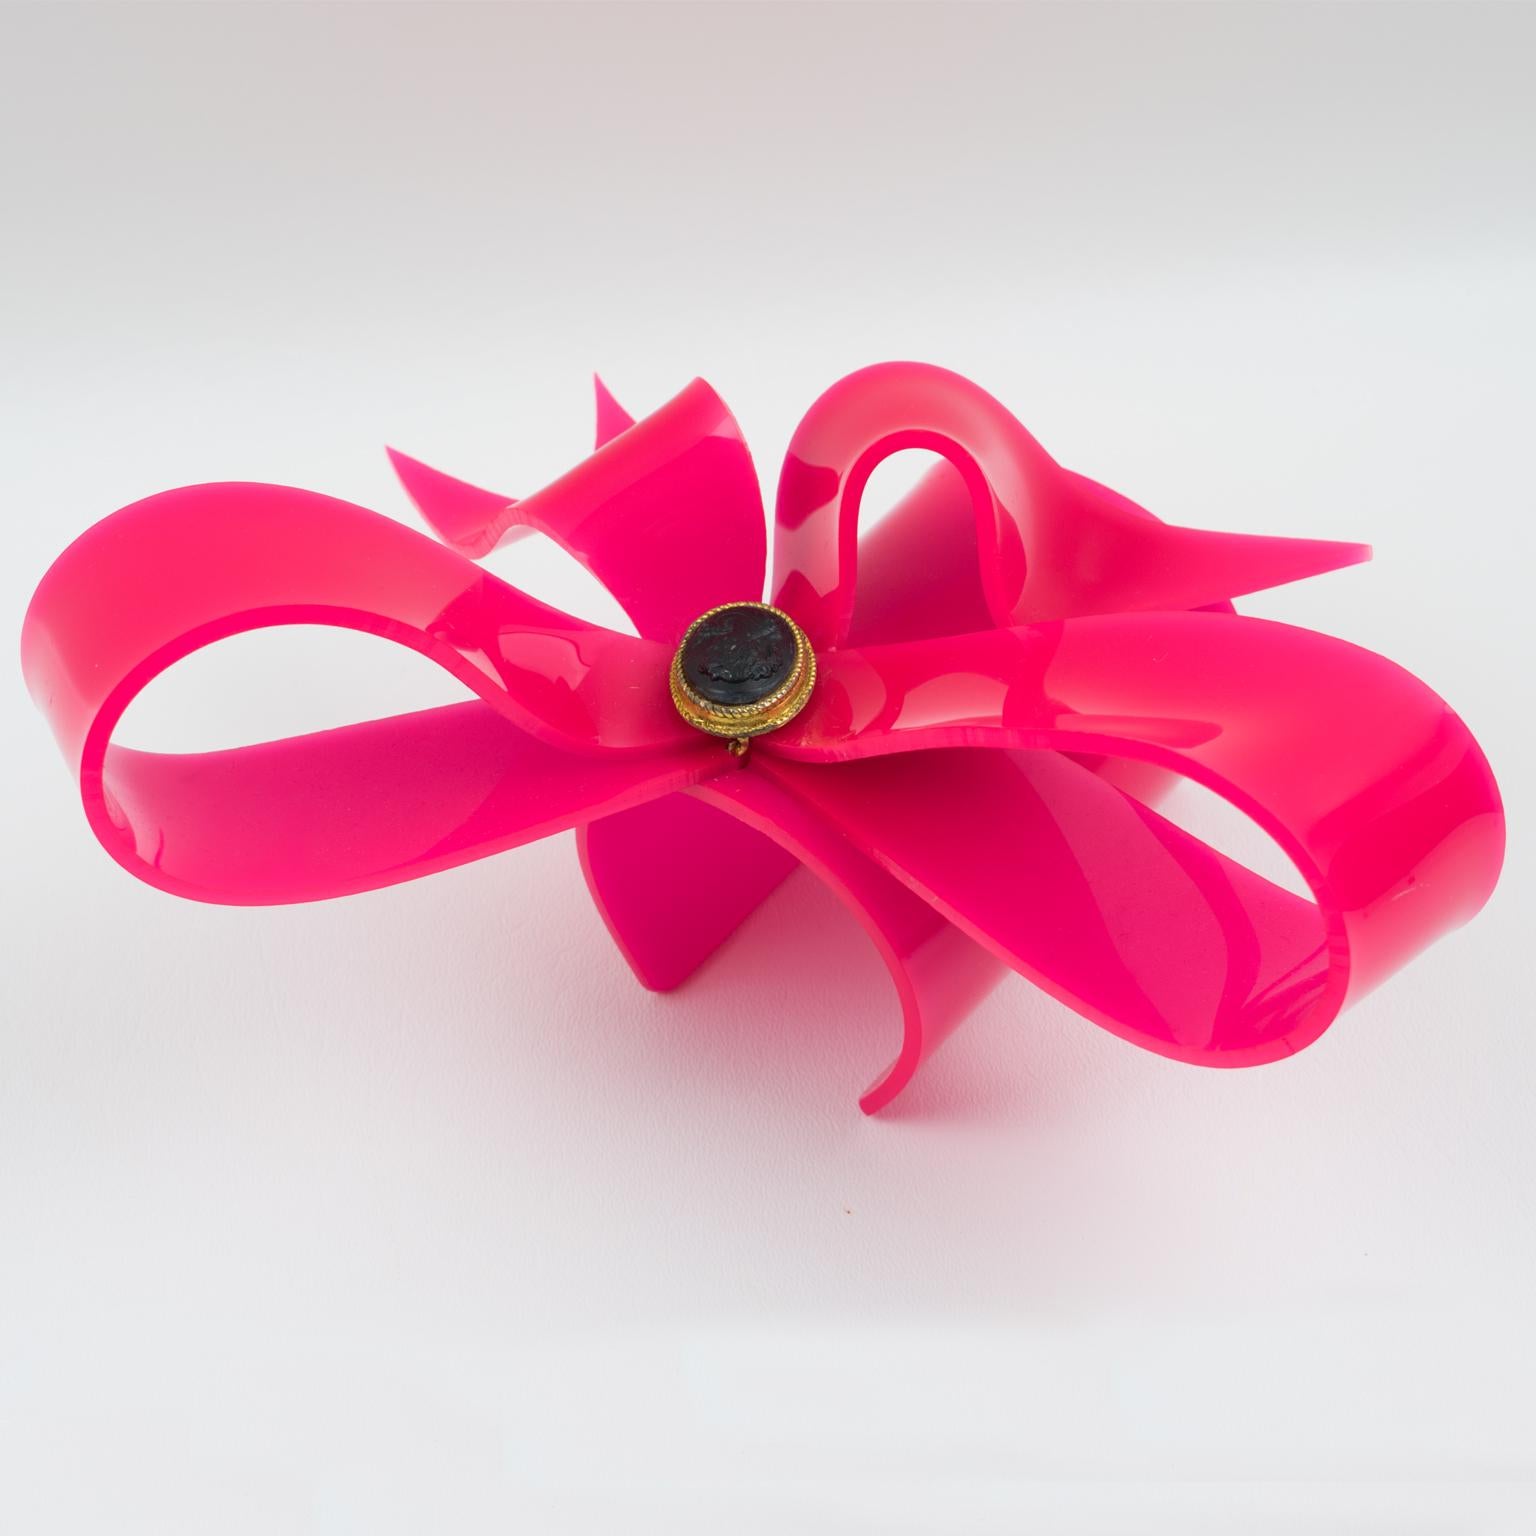 Vivienne Westwood Prototype Cuff Bangle Bracelet Pink Acrylic Bow 8